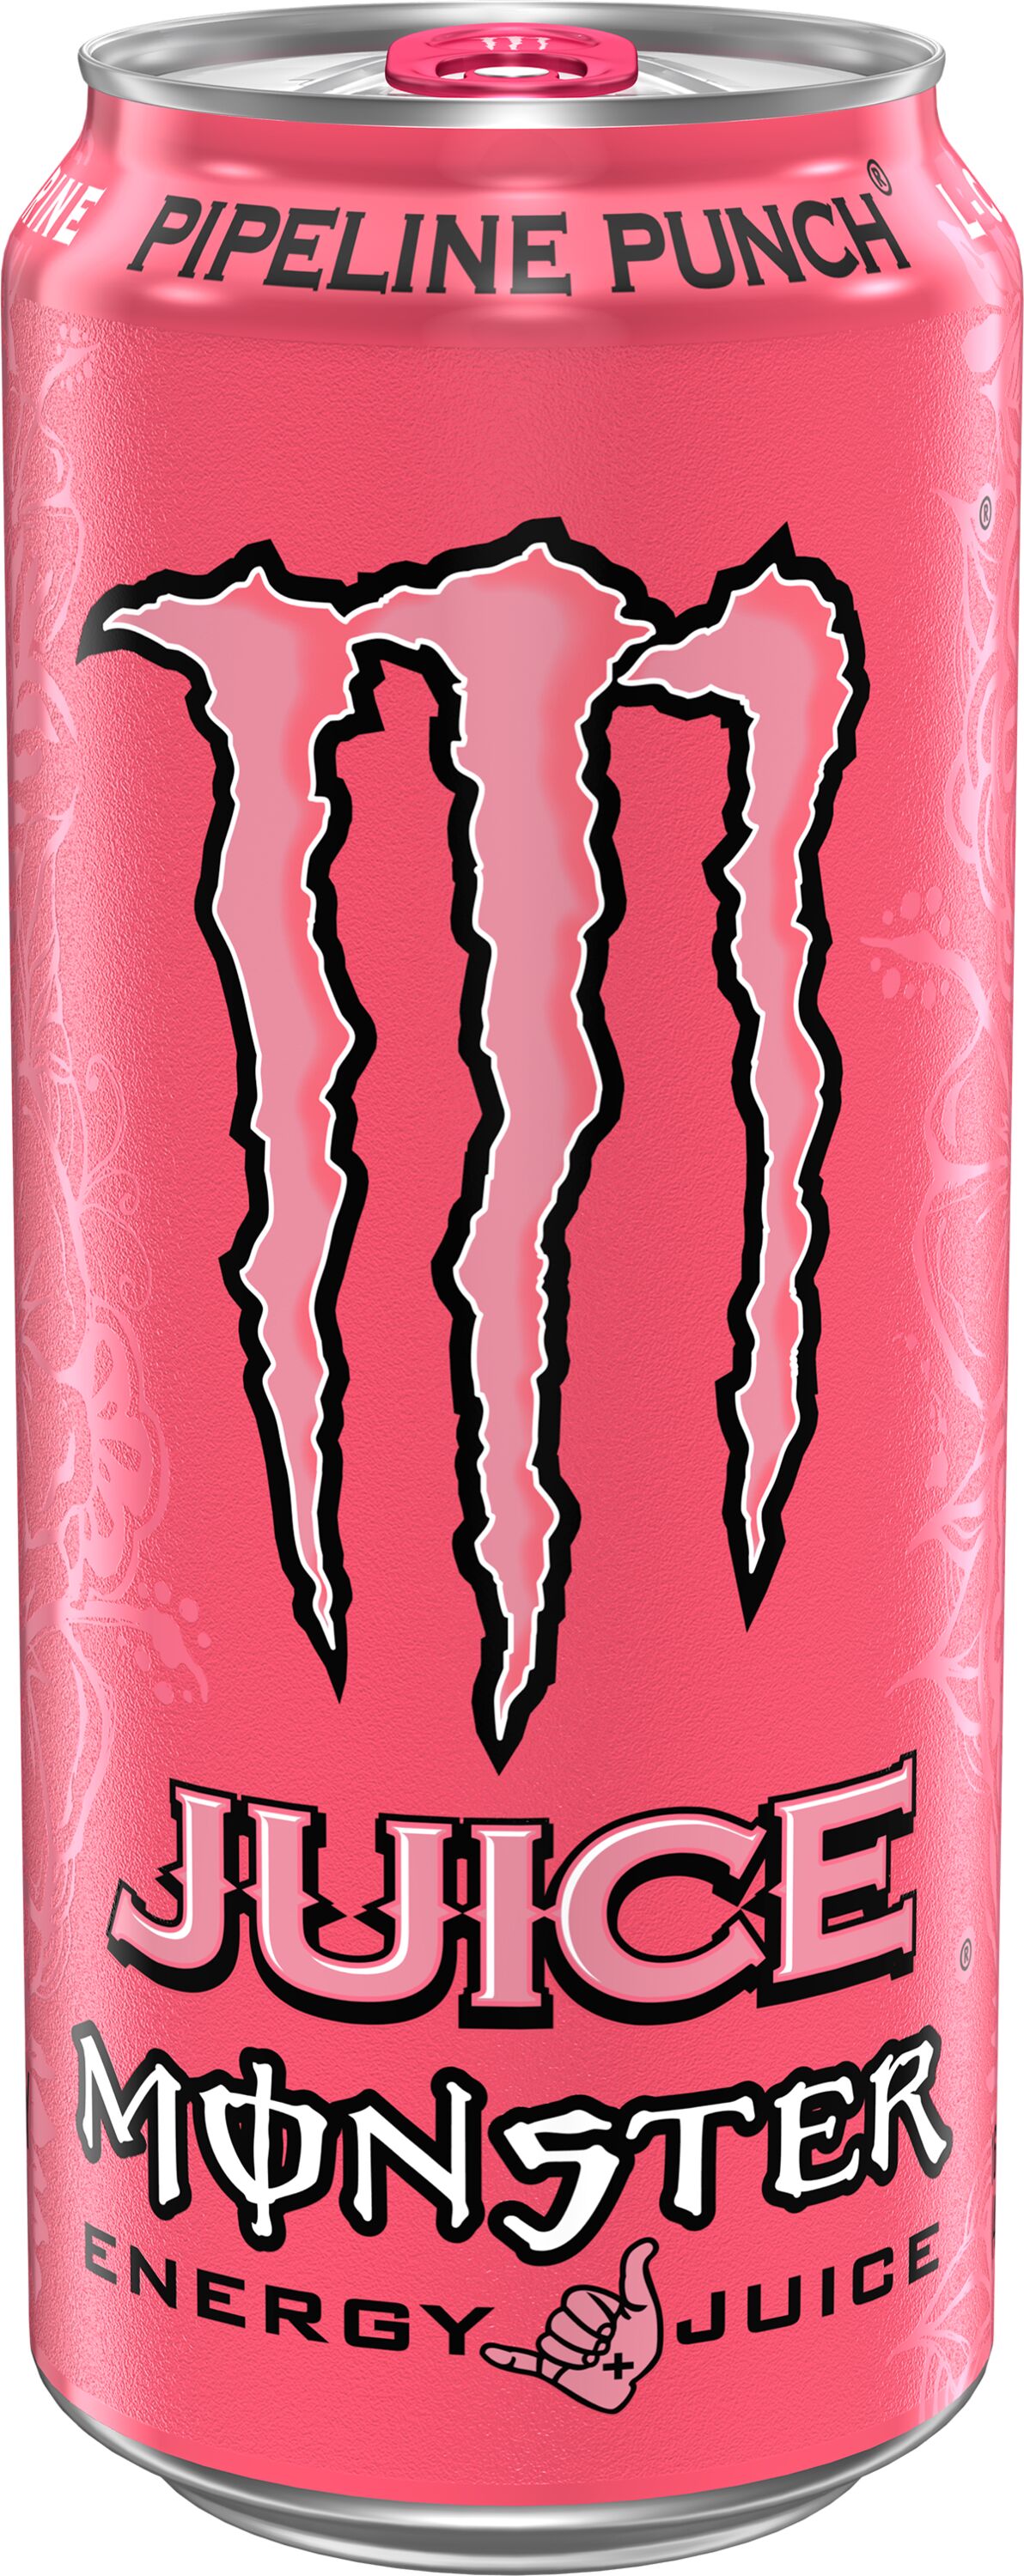 Monster Energy Sampler Pack, Super Energy Drink, 9 Flavor Variety Pack, 16  Ounce (9 Pack)